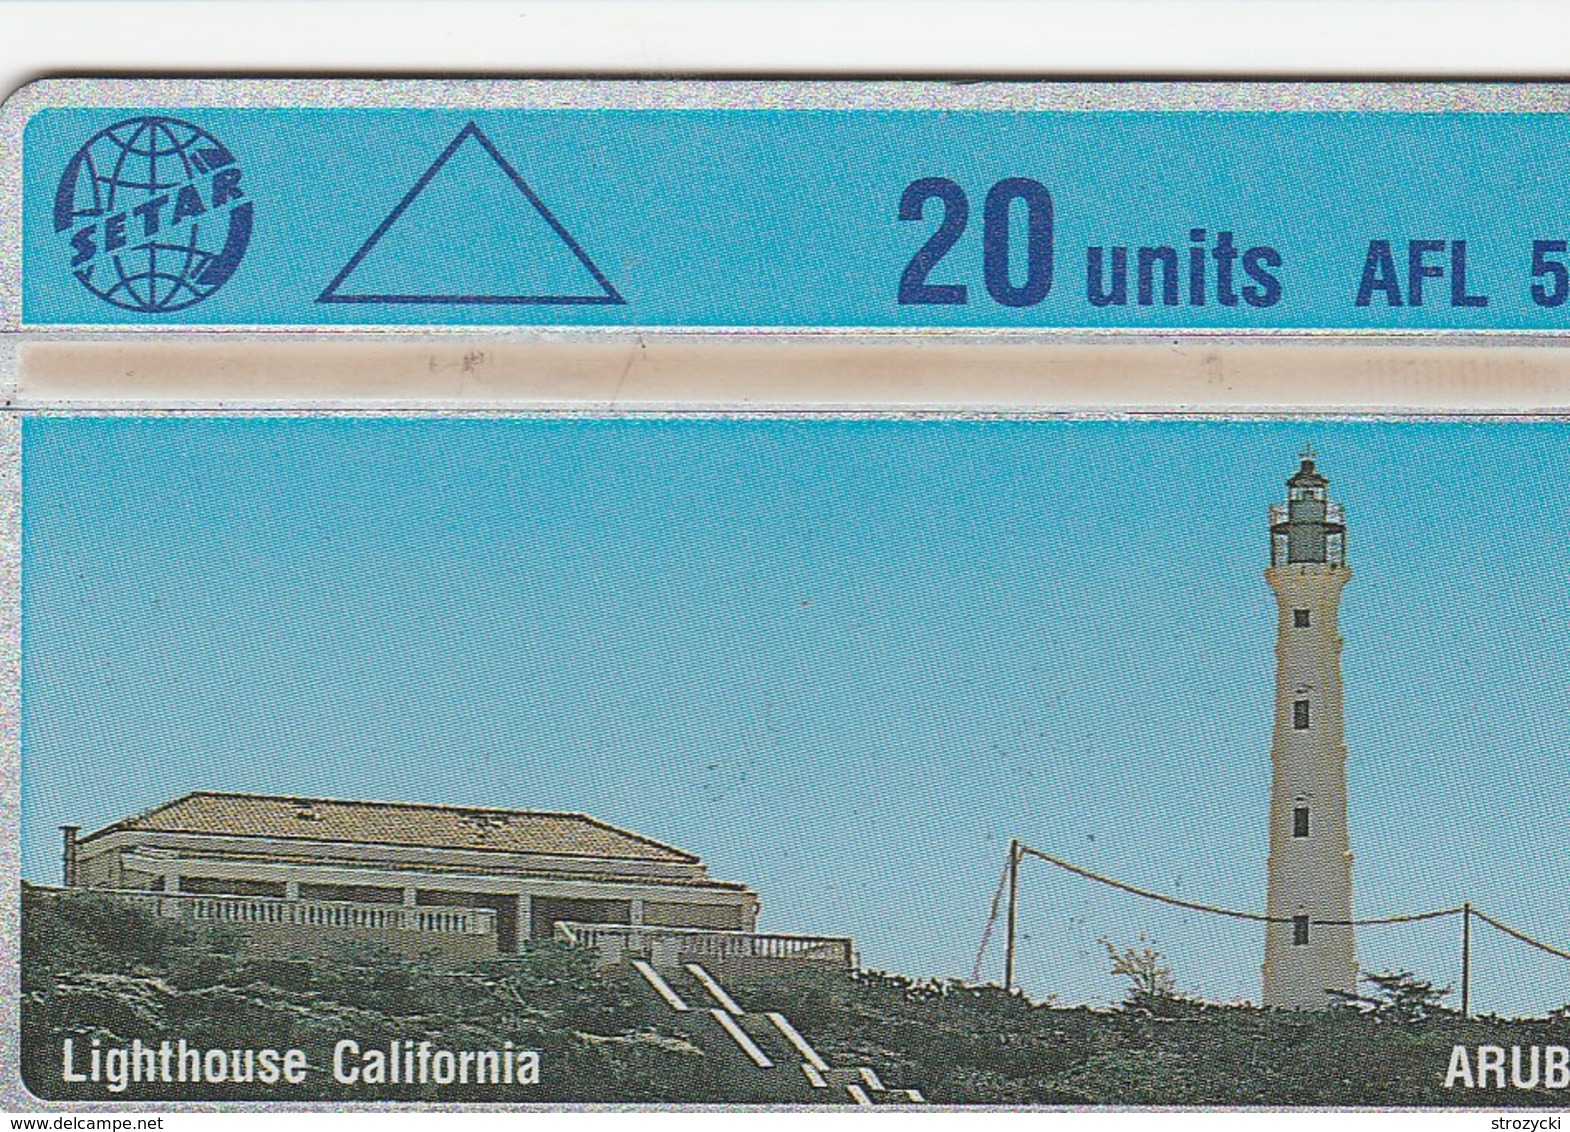 Aruba - Lighthouse California - 503A - Aruba